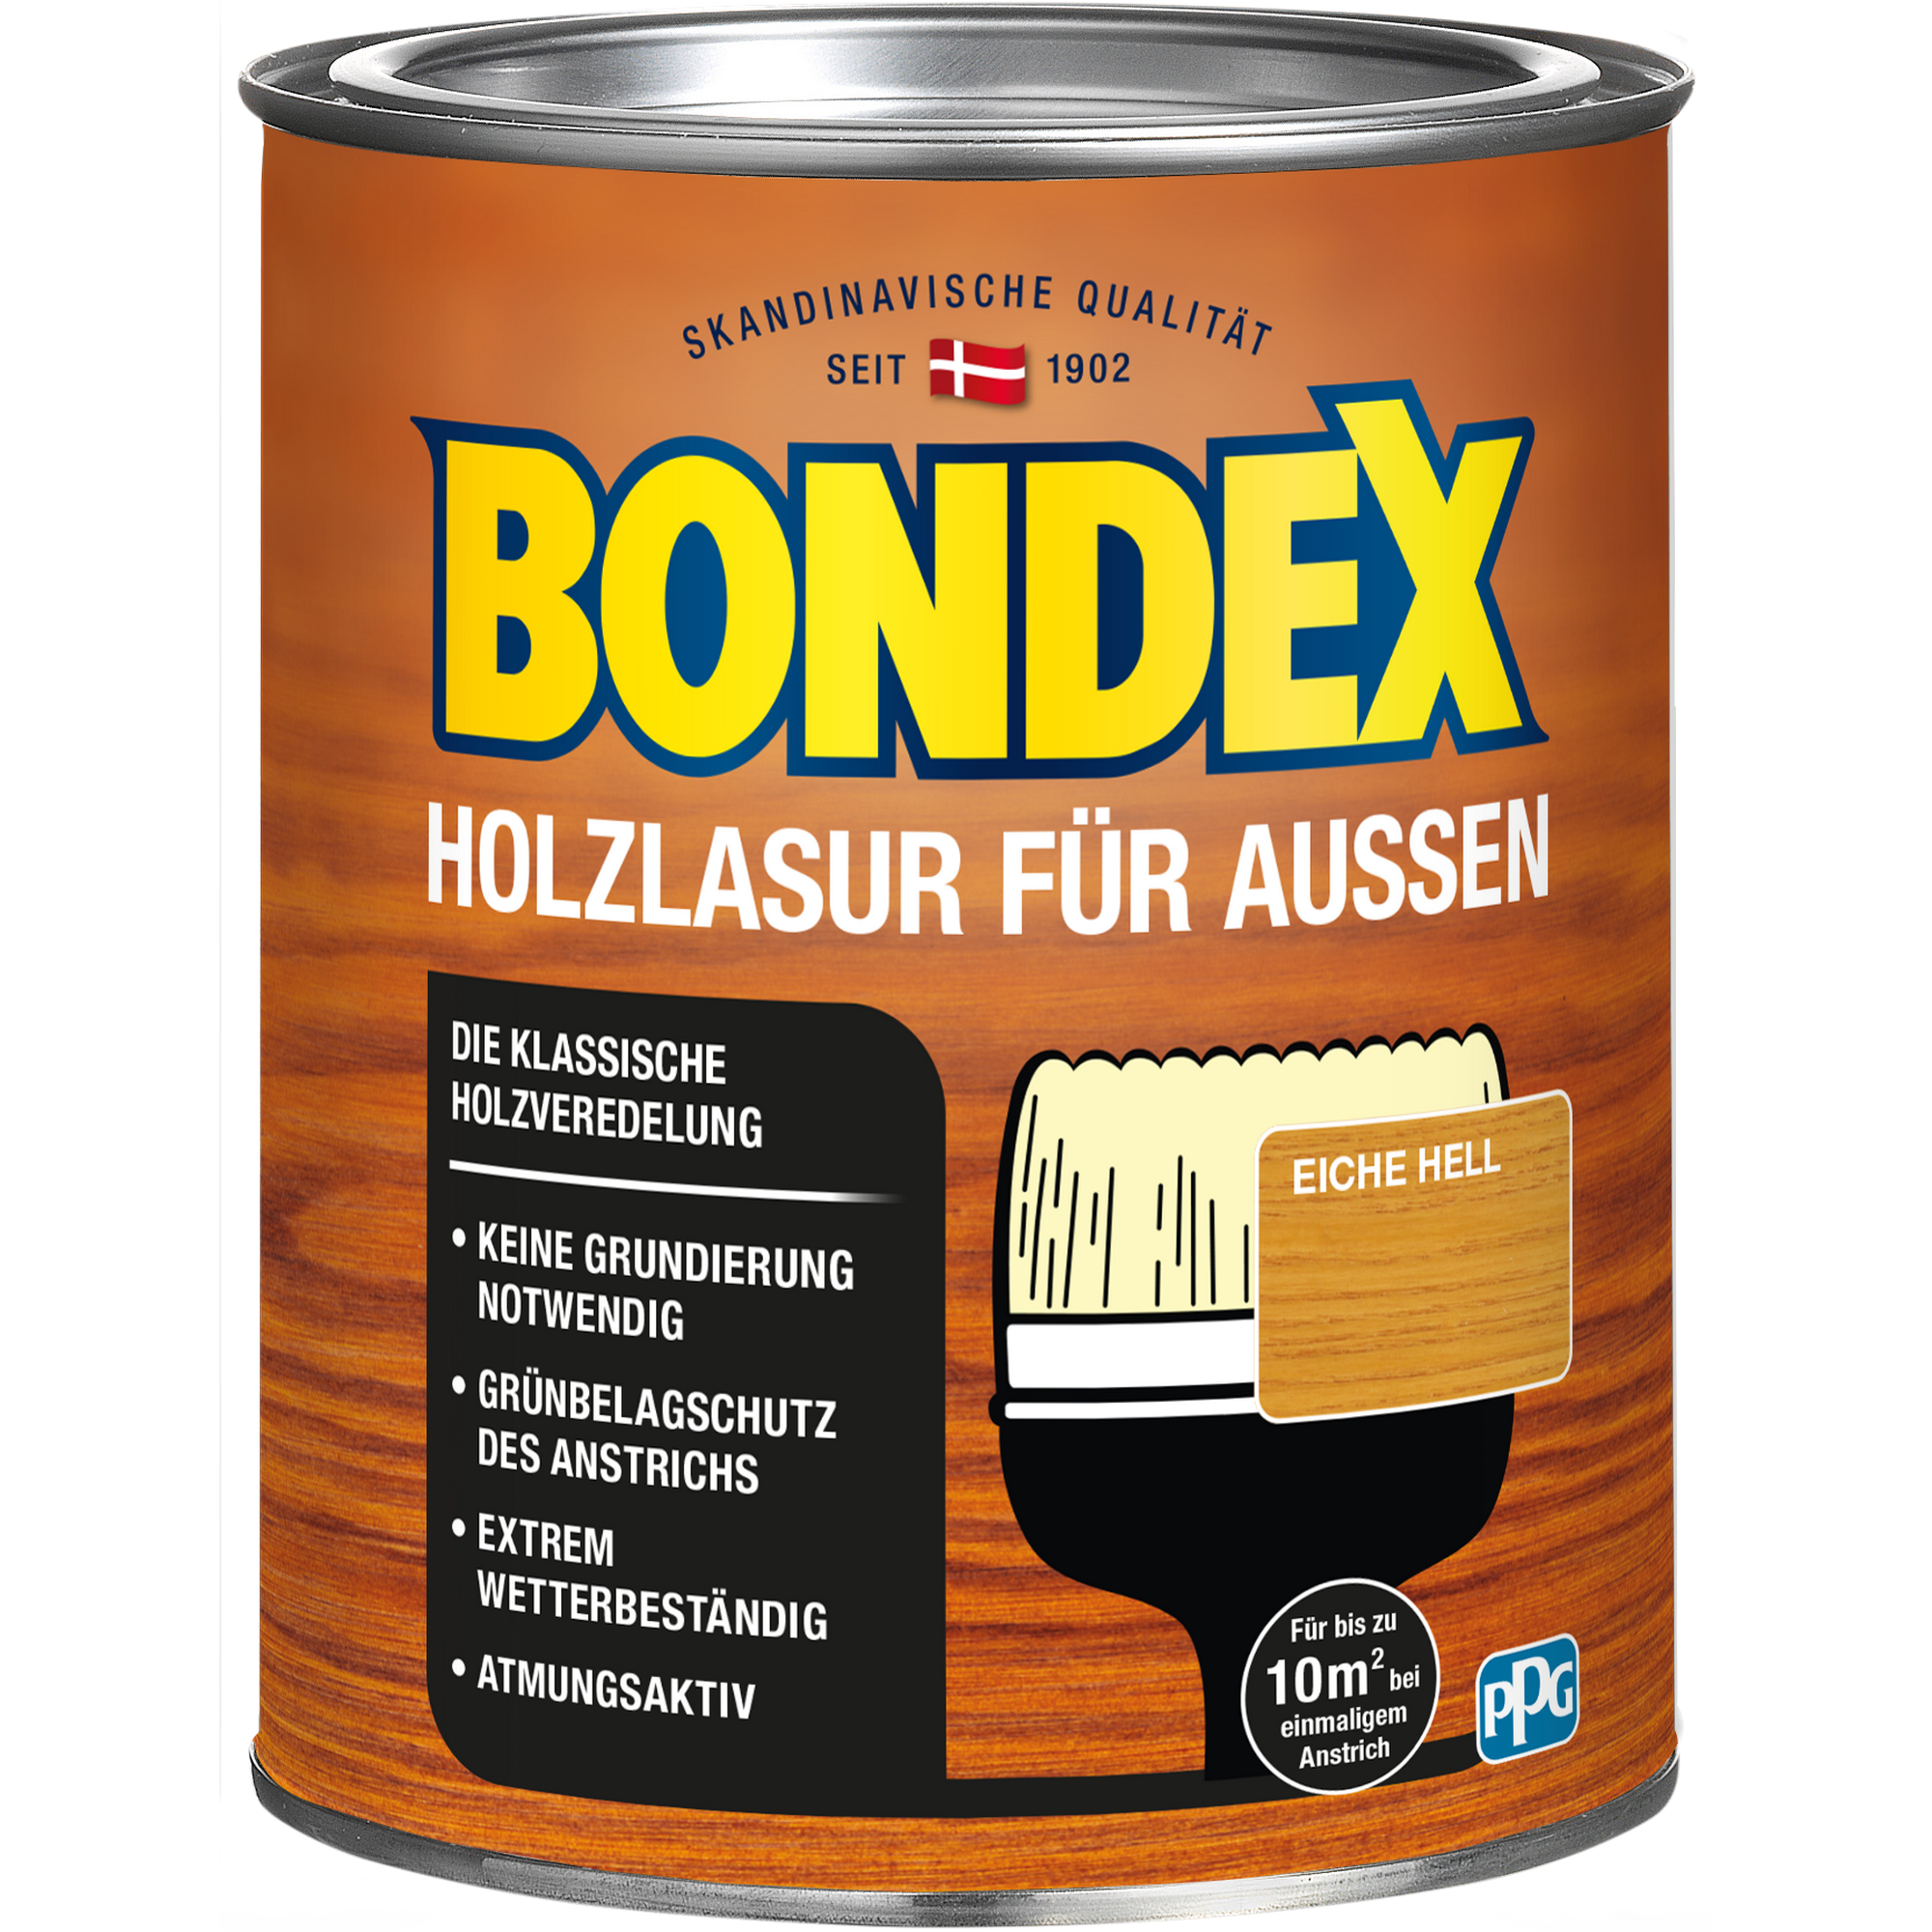 Bondex Holzlasur nussbaumfarben 750 ml